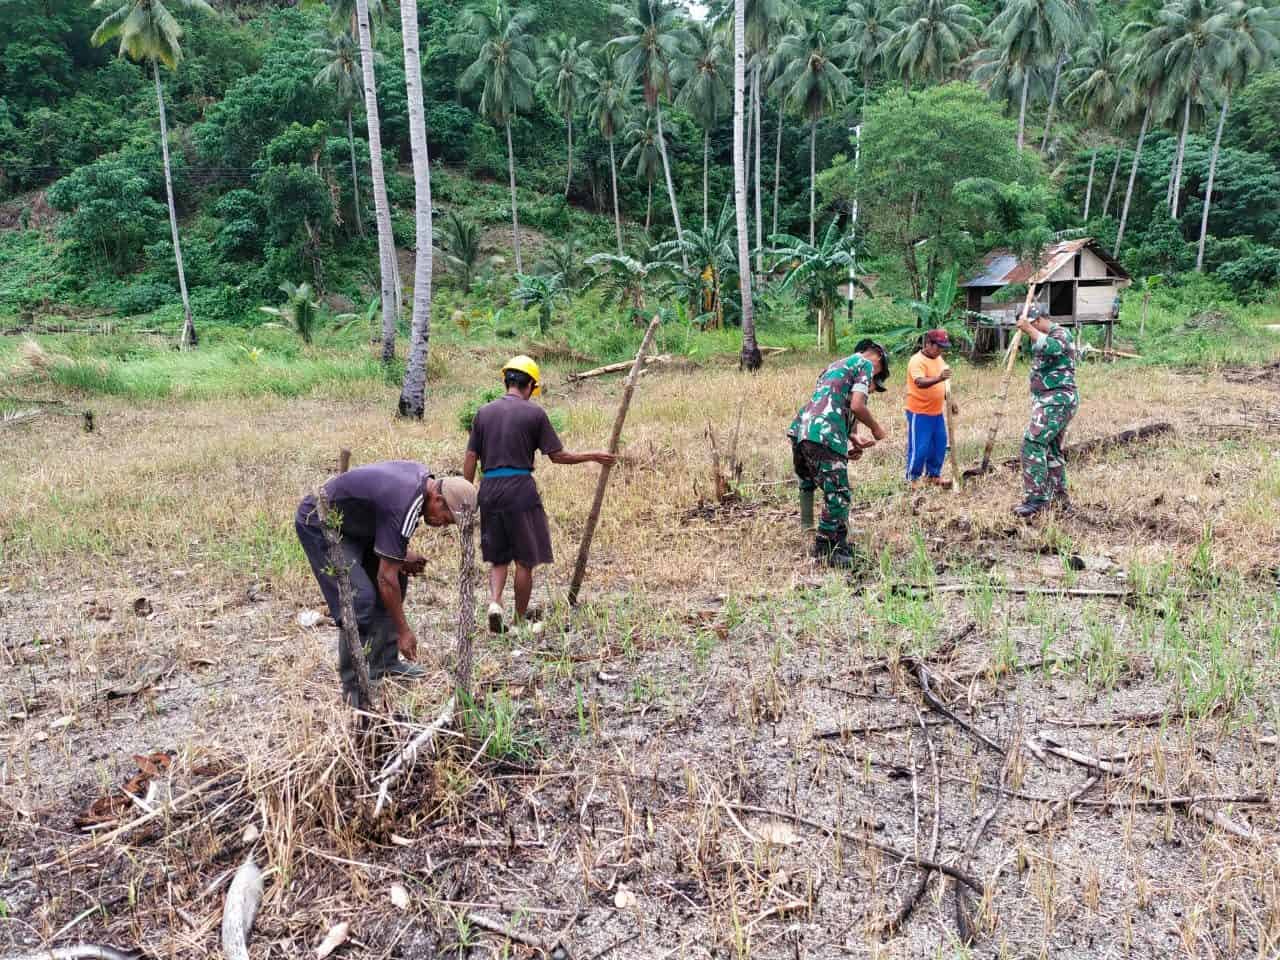 Wujudkan Ketahanan Pangan, Satgas Kodim Maluku Yonarhanud 11/WBY Bantu Warga Tanam Palawija di Desa Biloro